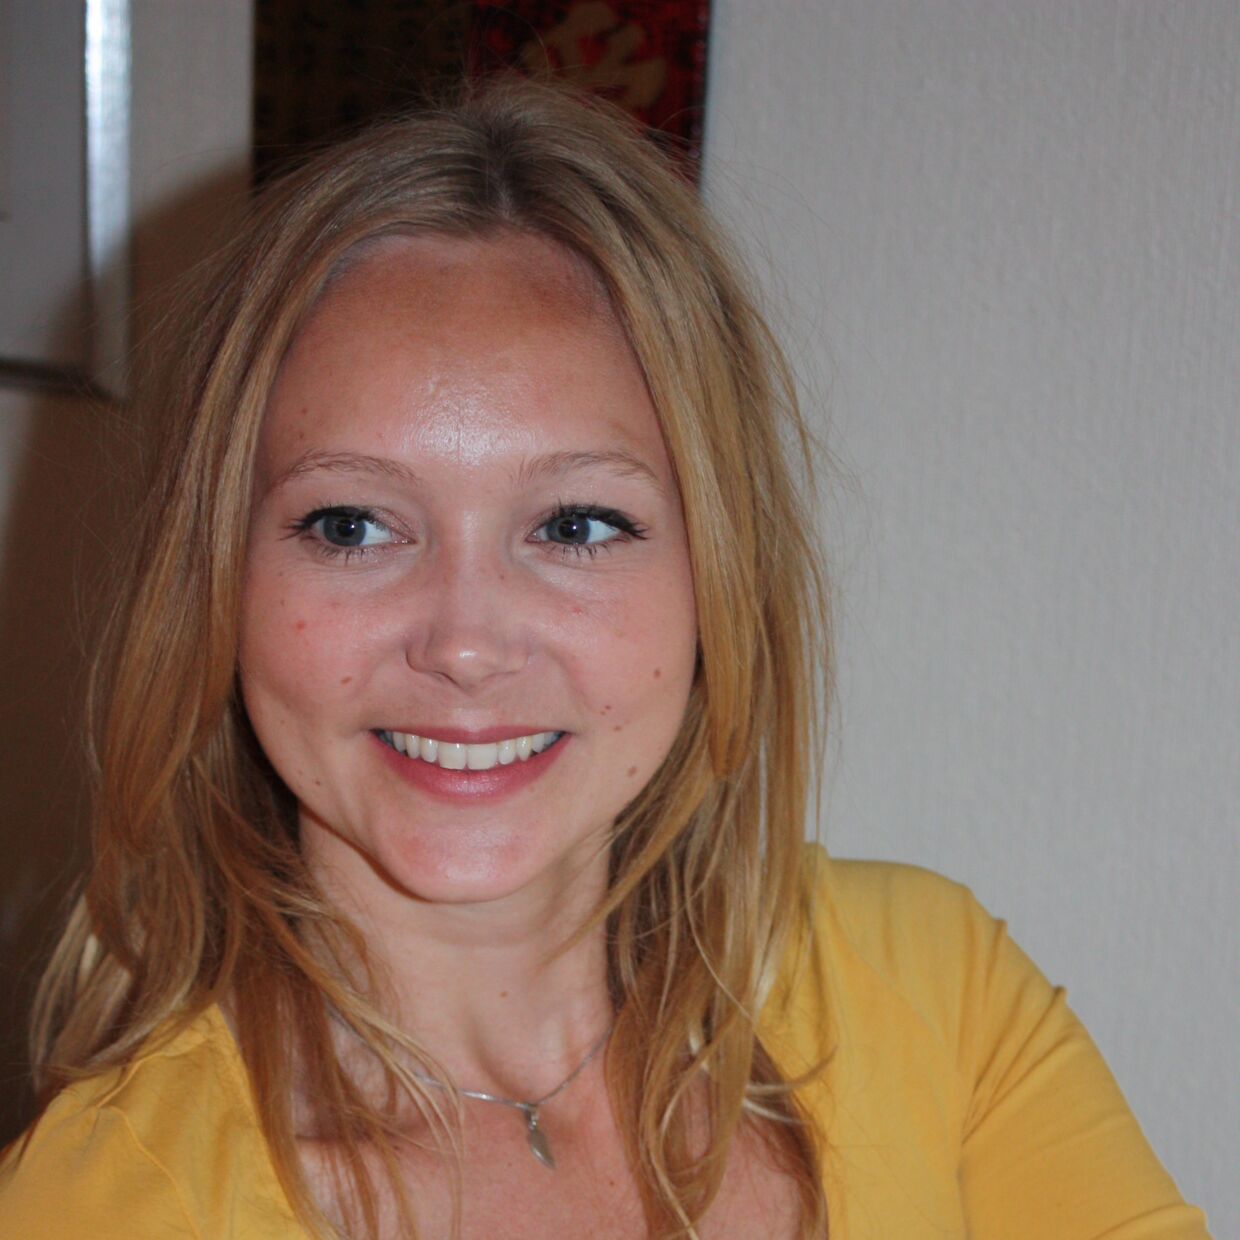 Den uddannede socialrådgiver Anna Kristin Gillebo Backlund var i oktober på arbejde i lejlighederne i Små Enheter, hvor hun passede på en 15-årig. Den selvsamme pige tog livet af den 30-årige socialrådgiver den aften. Foto: NTB/Scanpix